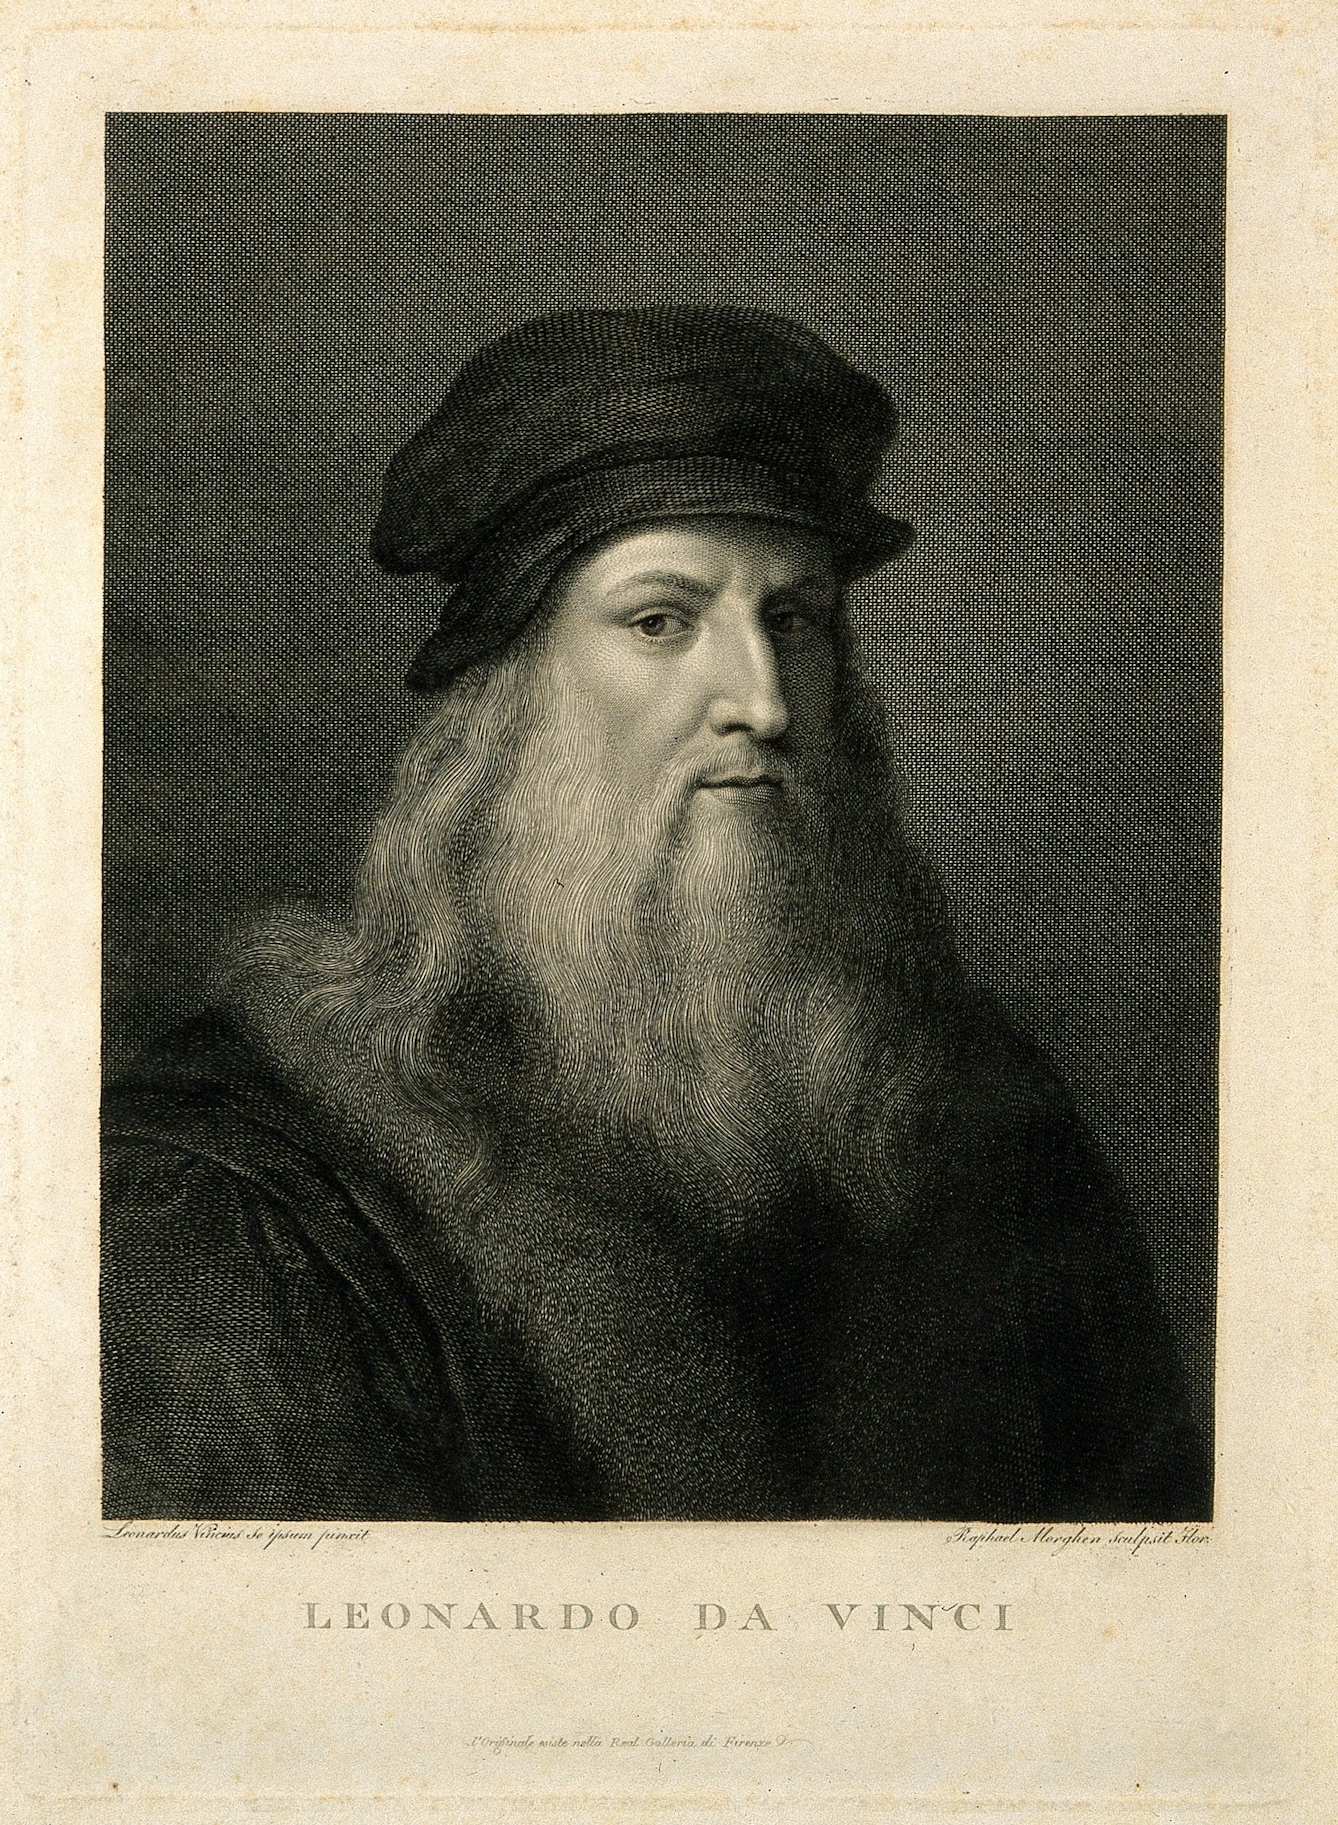 Engraving of Leonardo da Vinci